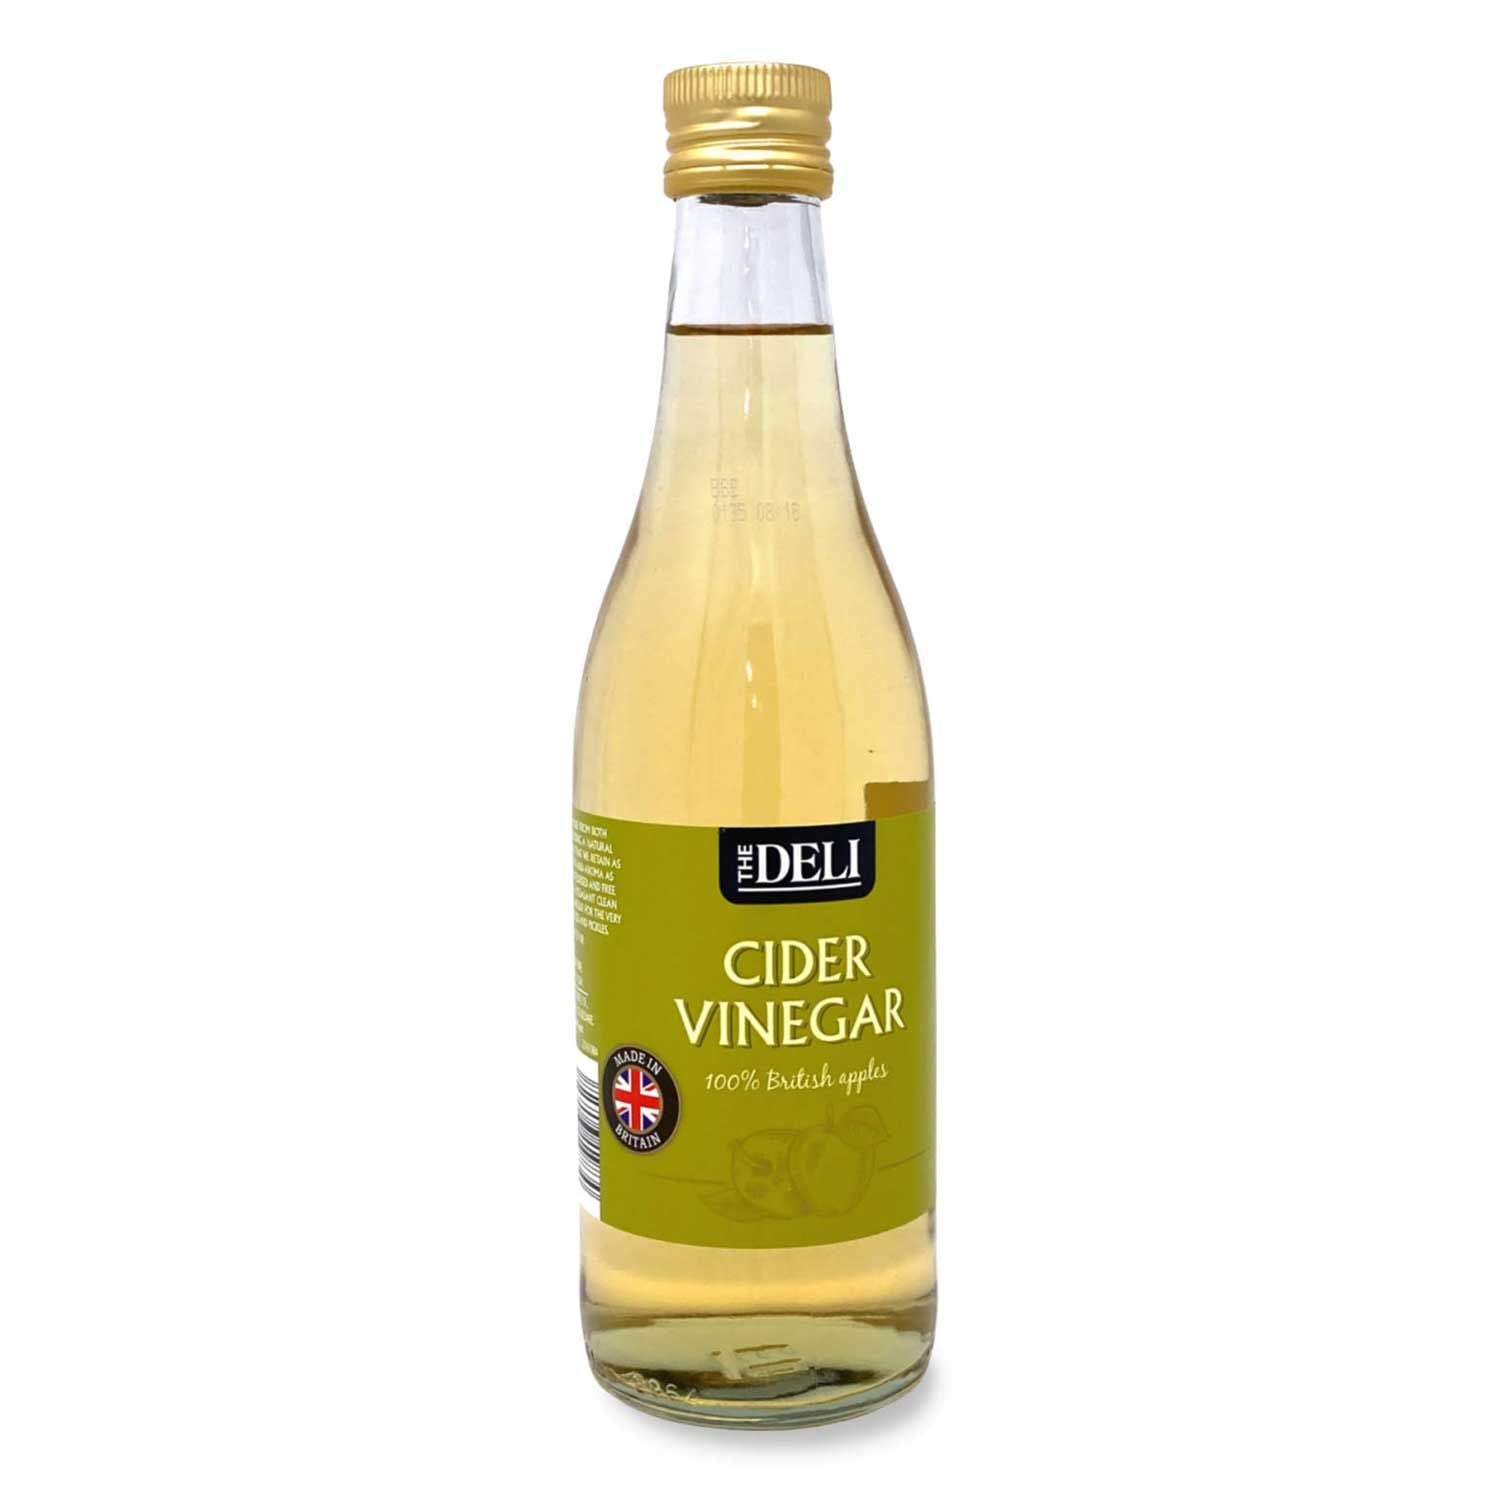 The Deli Cider Vinegar 500ml